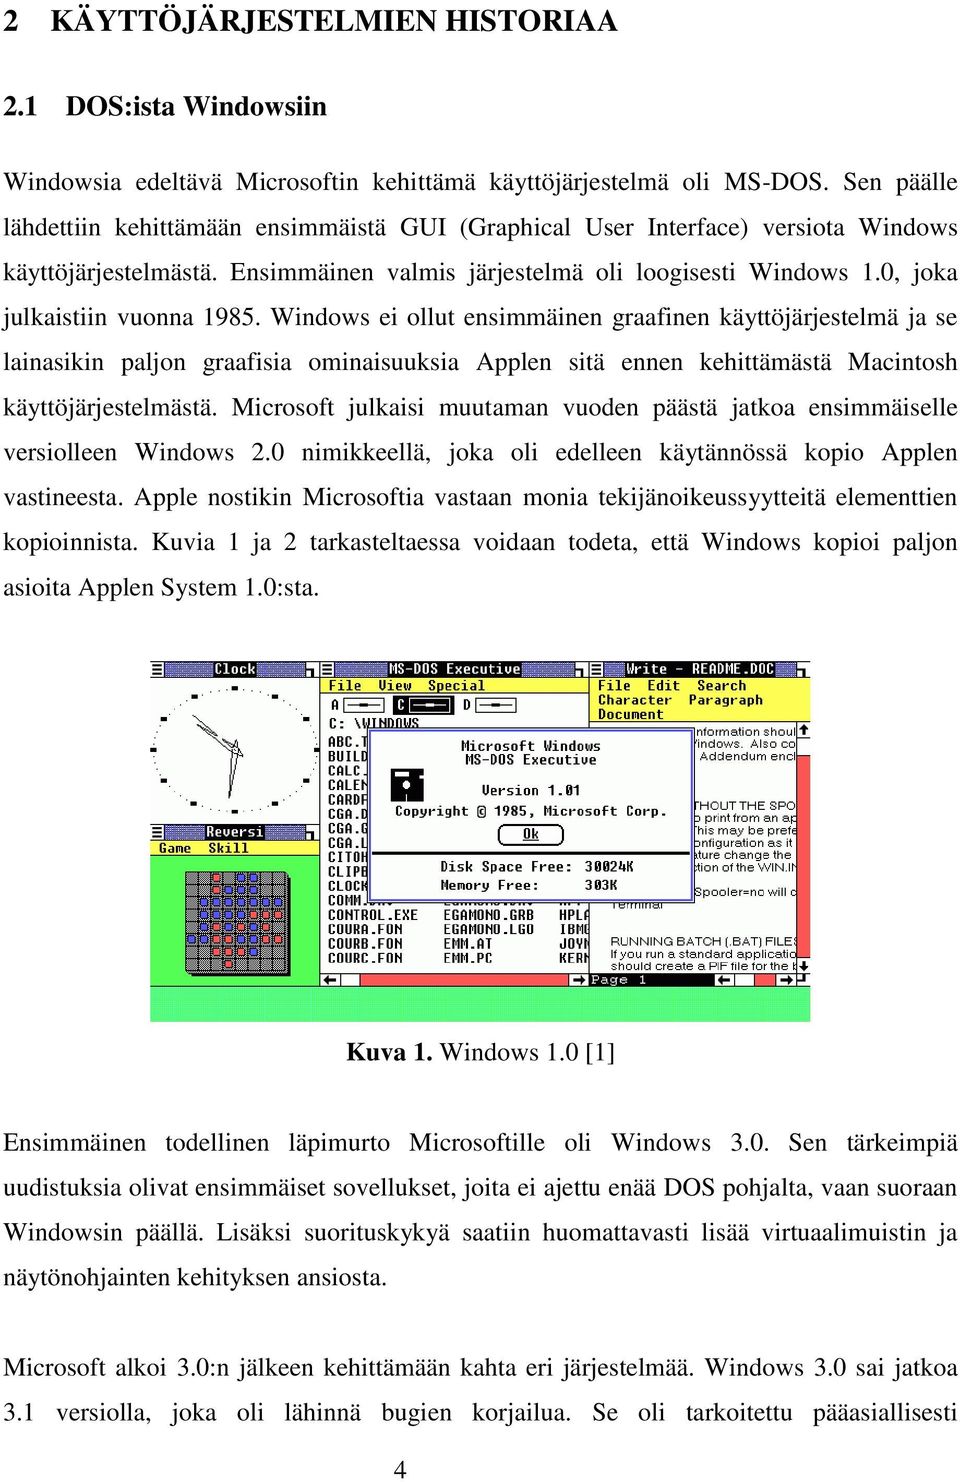 0, joka julkaistiin vuonna 1985. Windows ei ollut ensimmäinen graafinen käyttöjärjestelmä ja se lainasikin paljon graafisia ominaisuuksia Applen sitä ennen kehittämästä Macintosh käyttöjärjestelmästä.